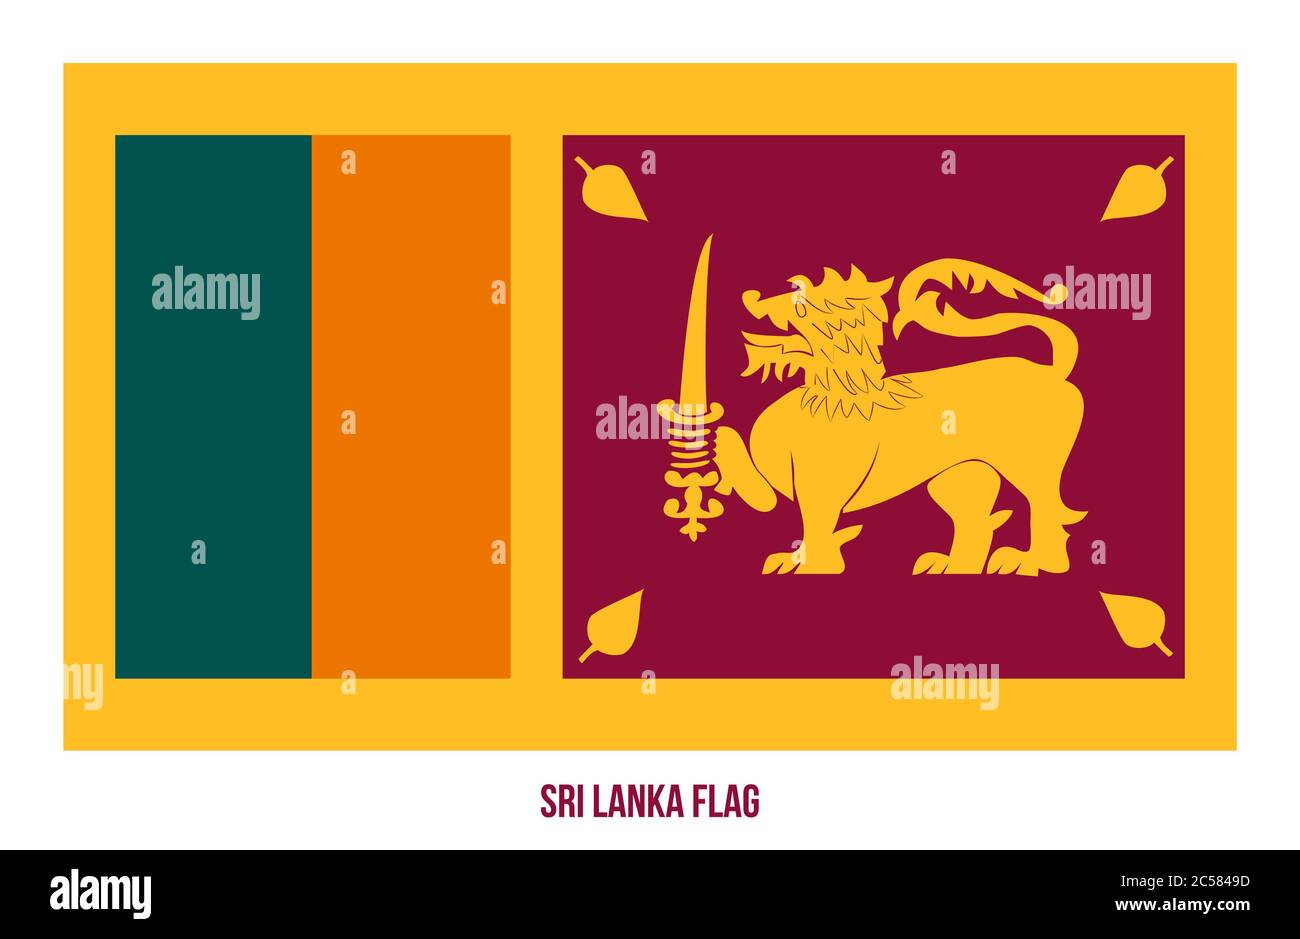 Sri Lanka Flag Vector Illustration on White Background. Sri Lanka National Flag. Stock Vector